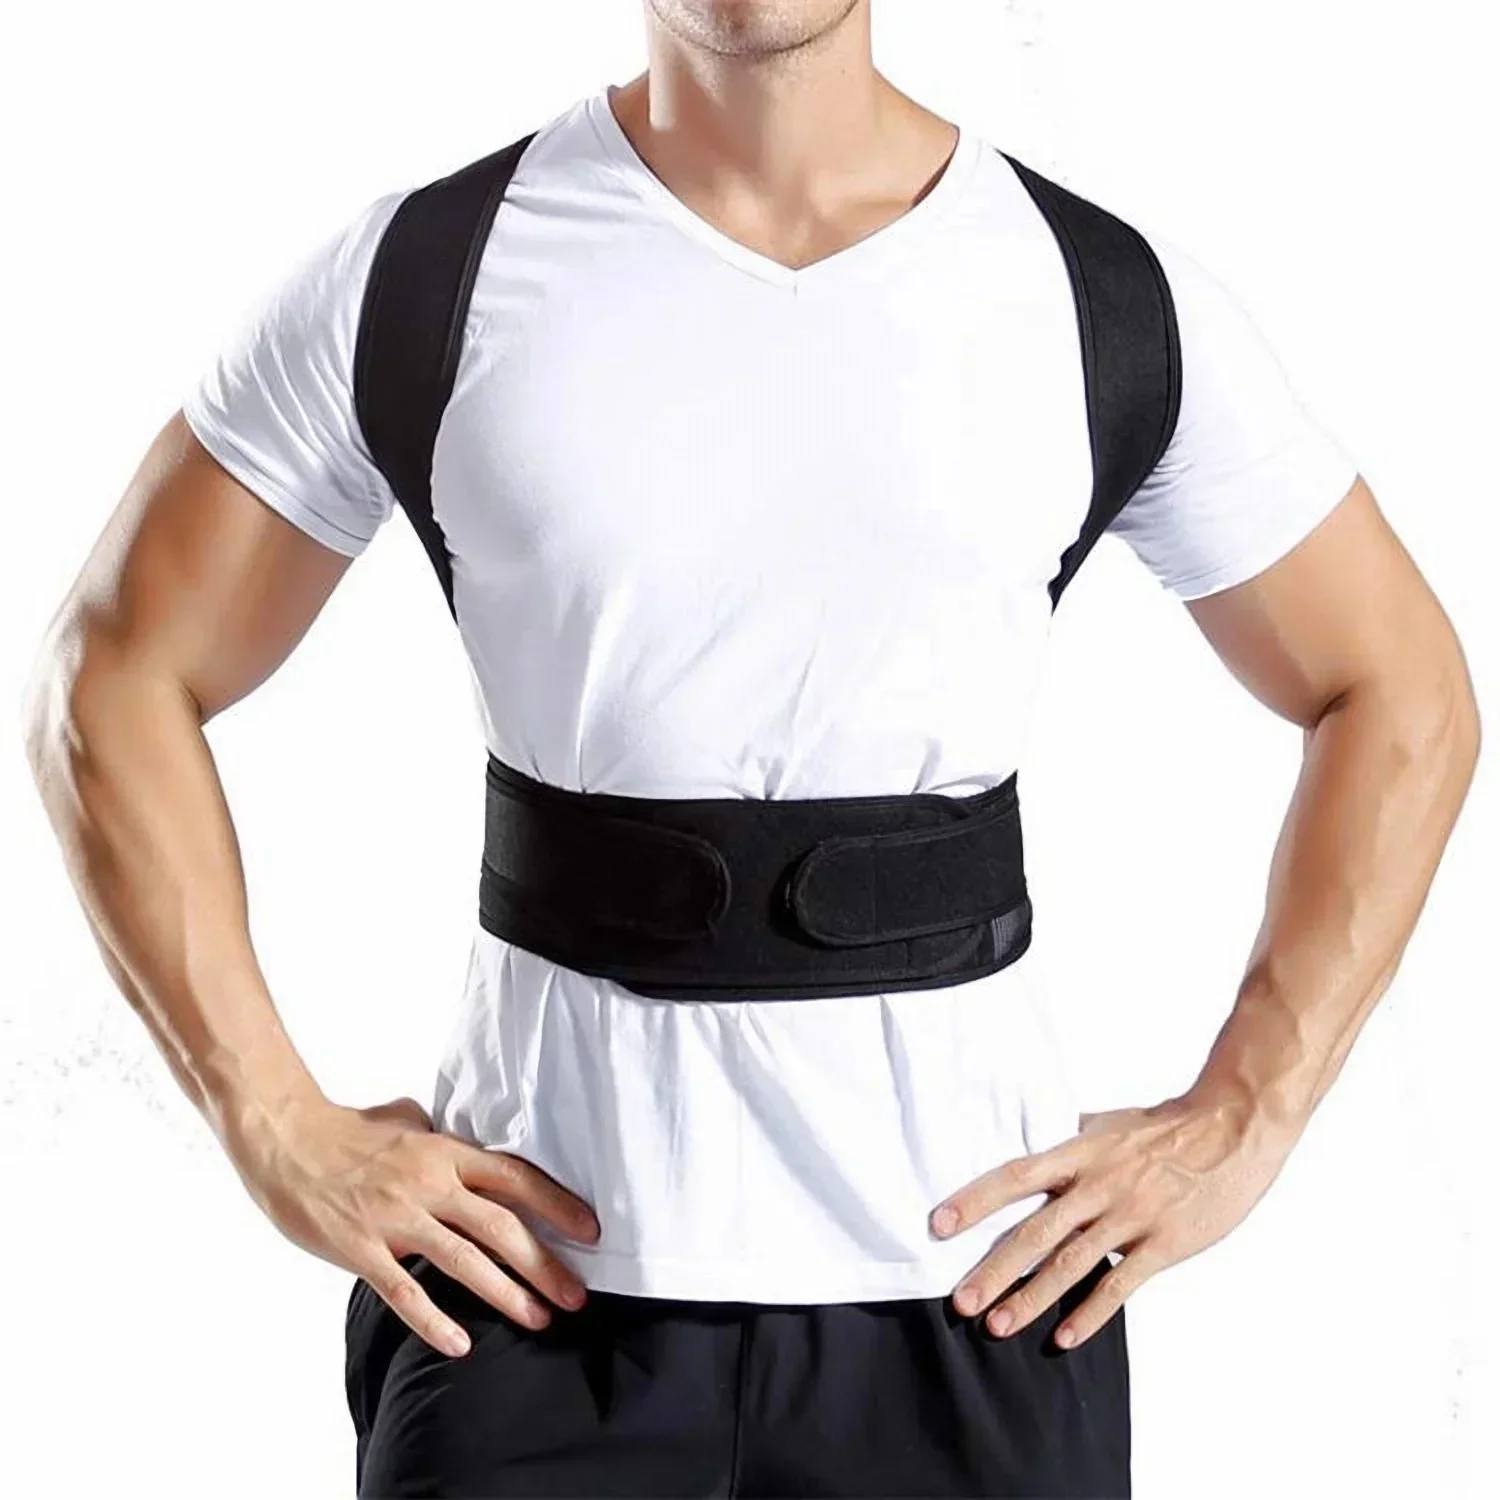 Упражнение, облегчающее боль, корсетный ремень для спины, спортивный бандаж Для поддержки мужской осанки, Поясничный корректор, тренировка плечевой колонки Изображение 0 